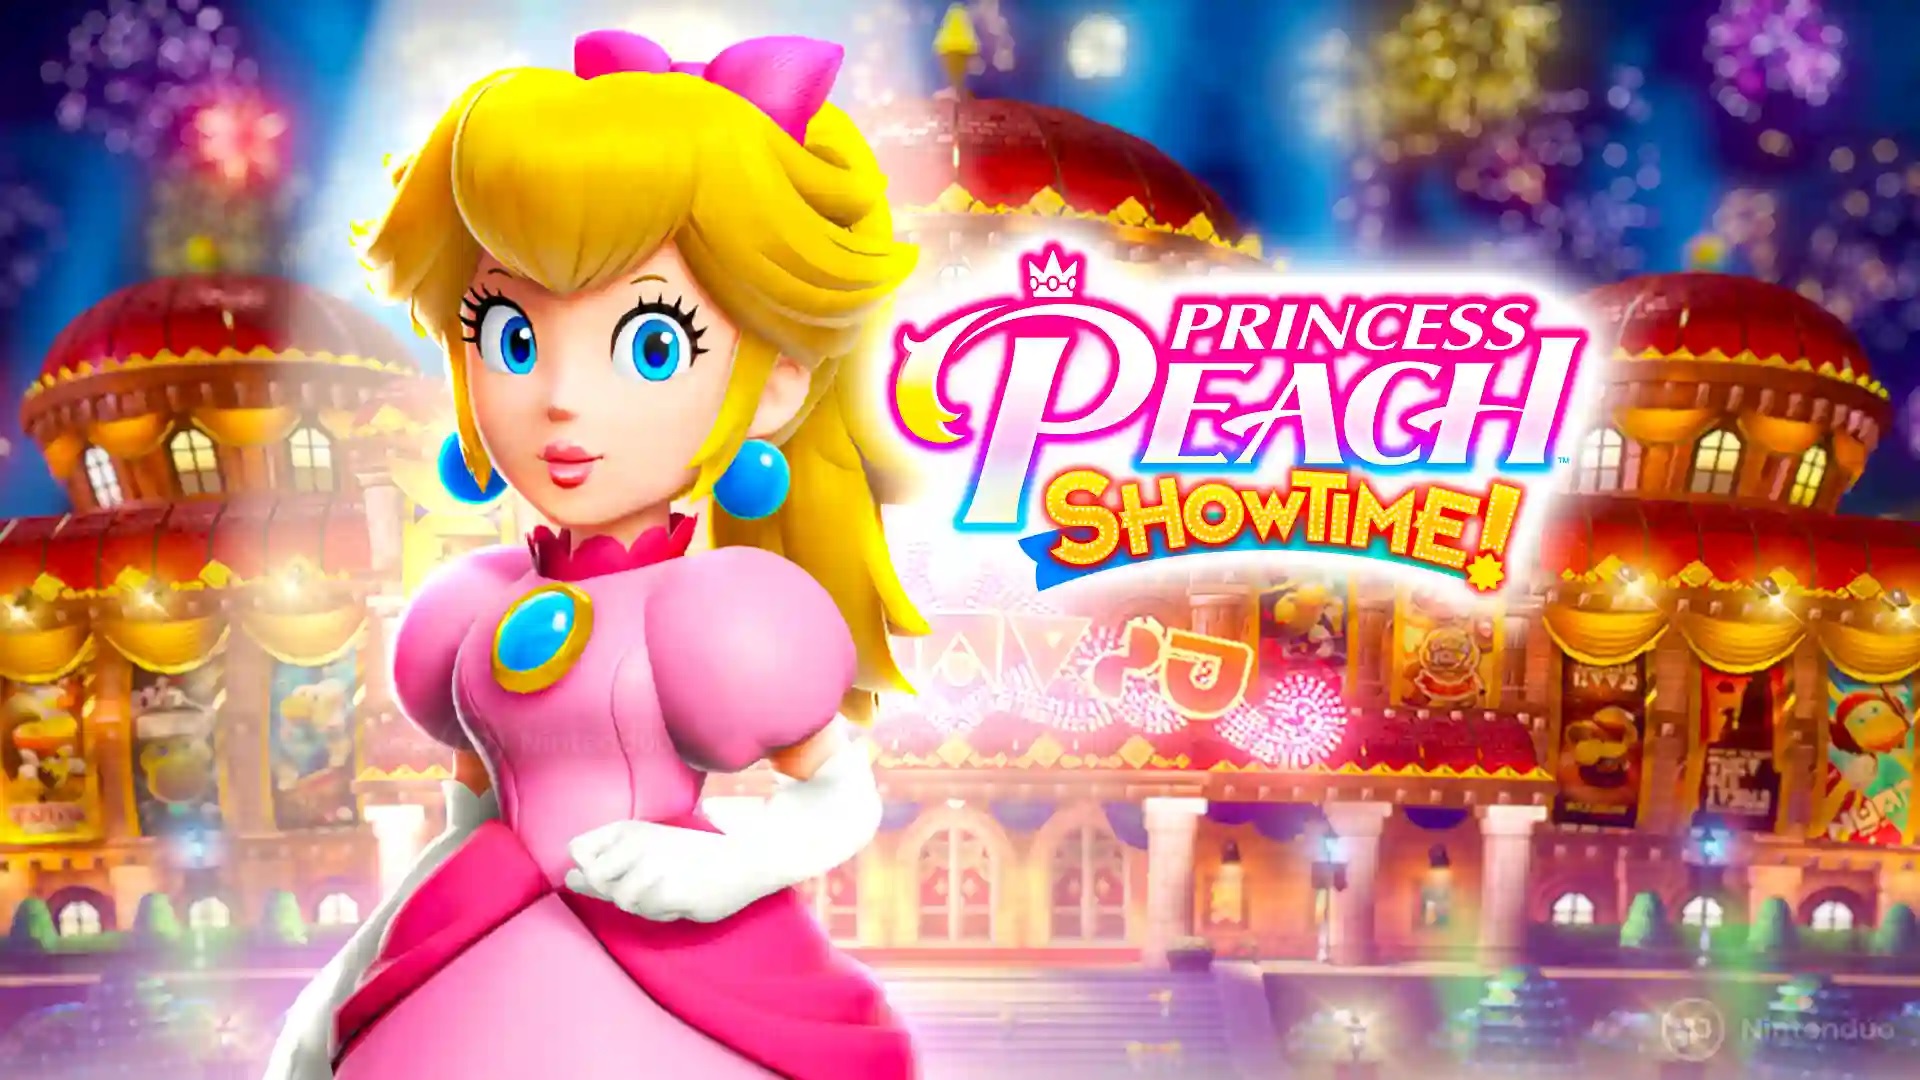 Princess Peach Showtime Main